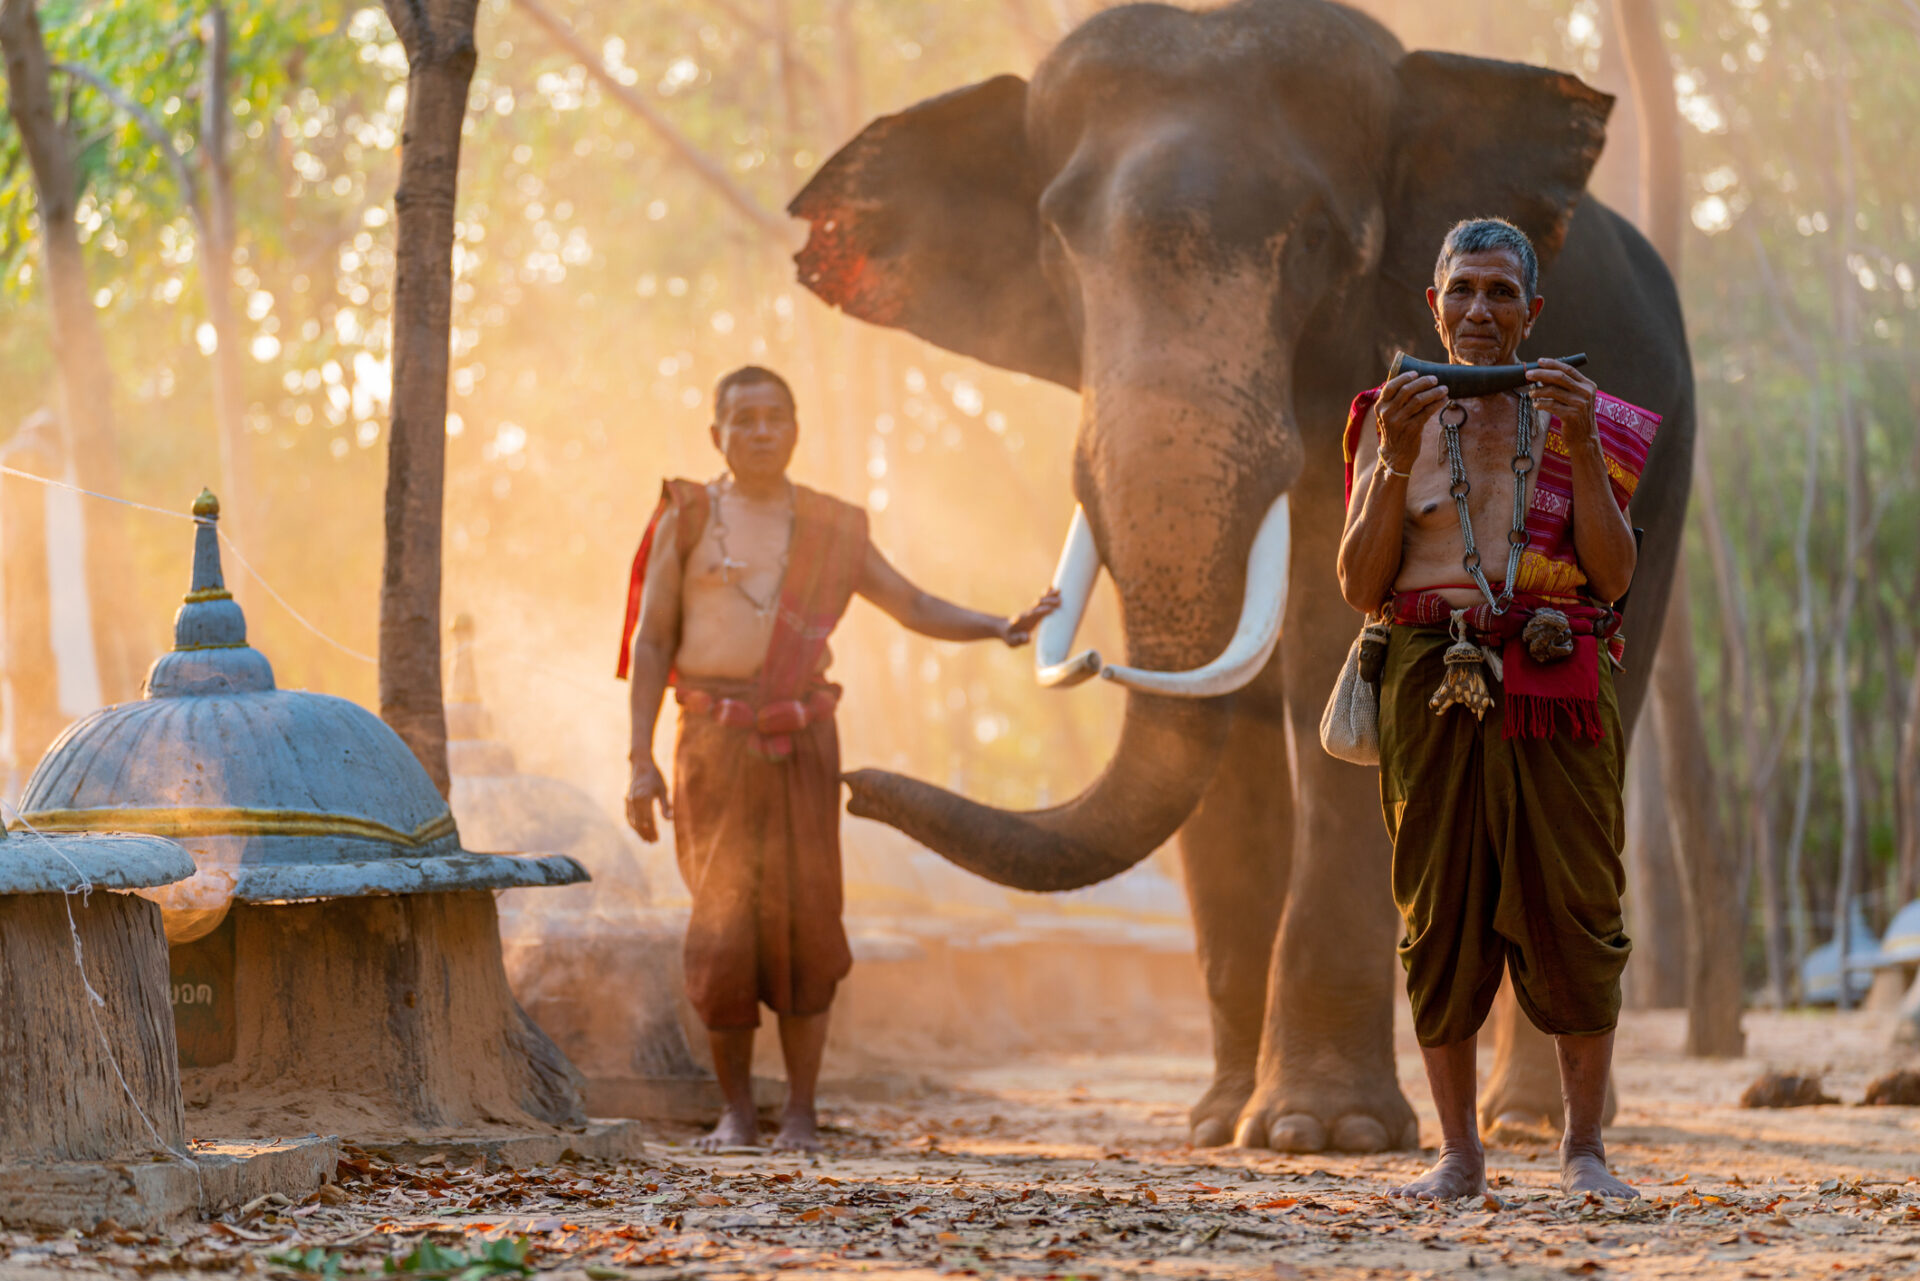 Elefanttur i Chiang Mai: To mænd står ved siden af en elefant